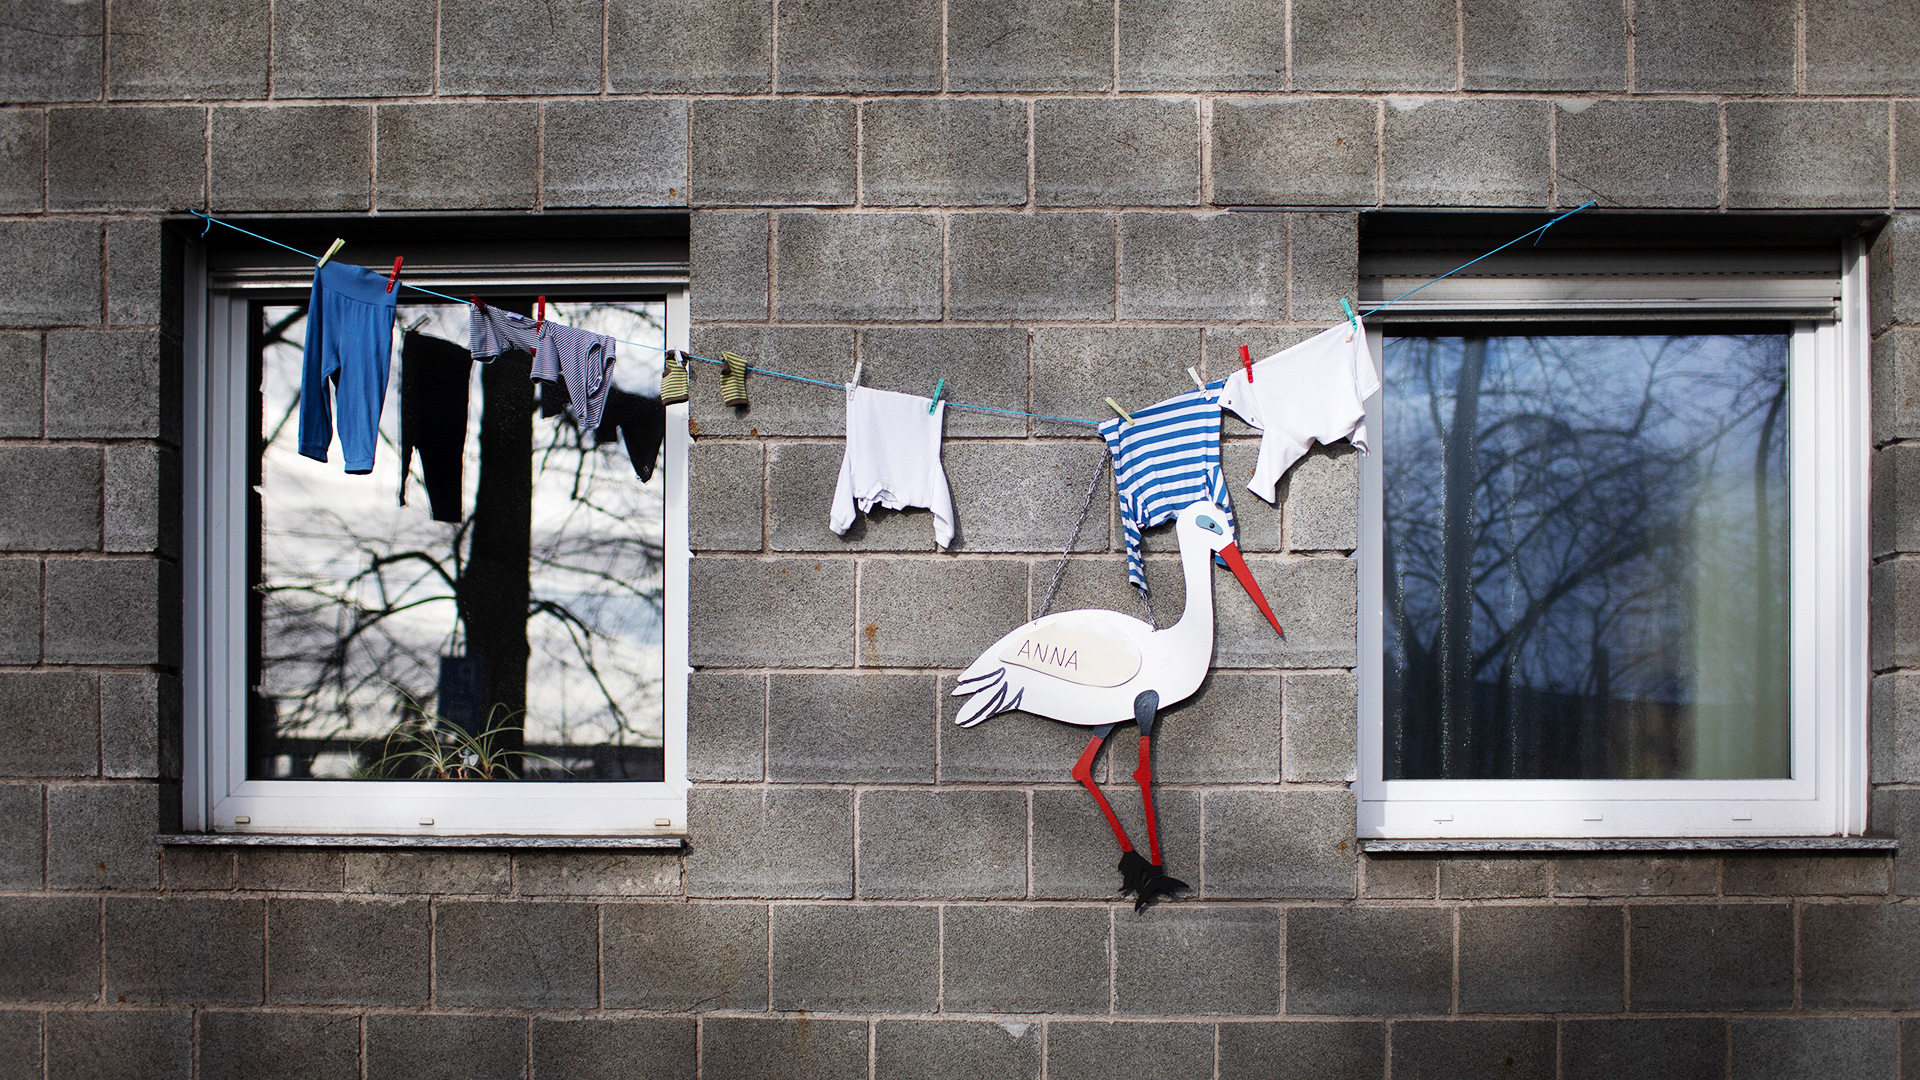 An einer Hauswand zeigt ein Klapperstorch und Kinderkleidung auf einer Leine die Geburt eines Kindes an.